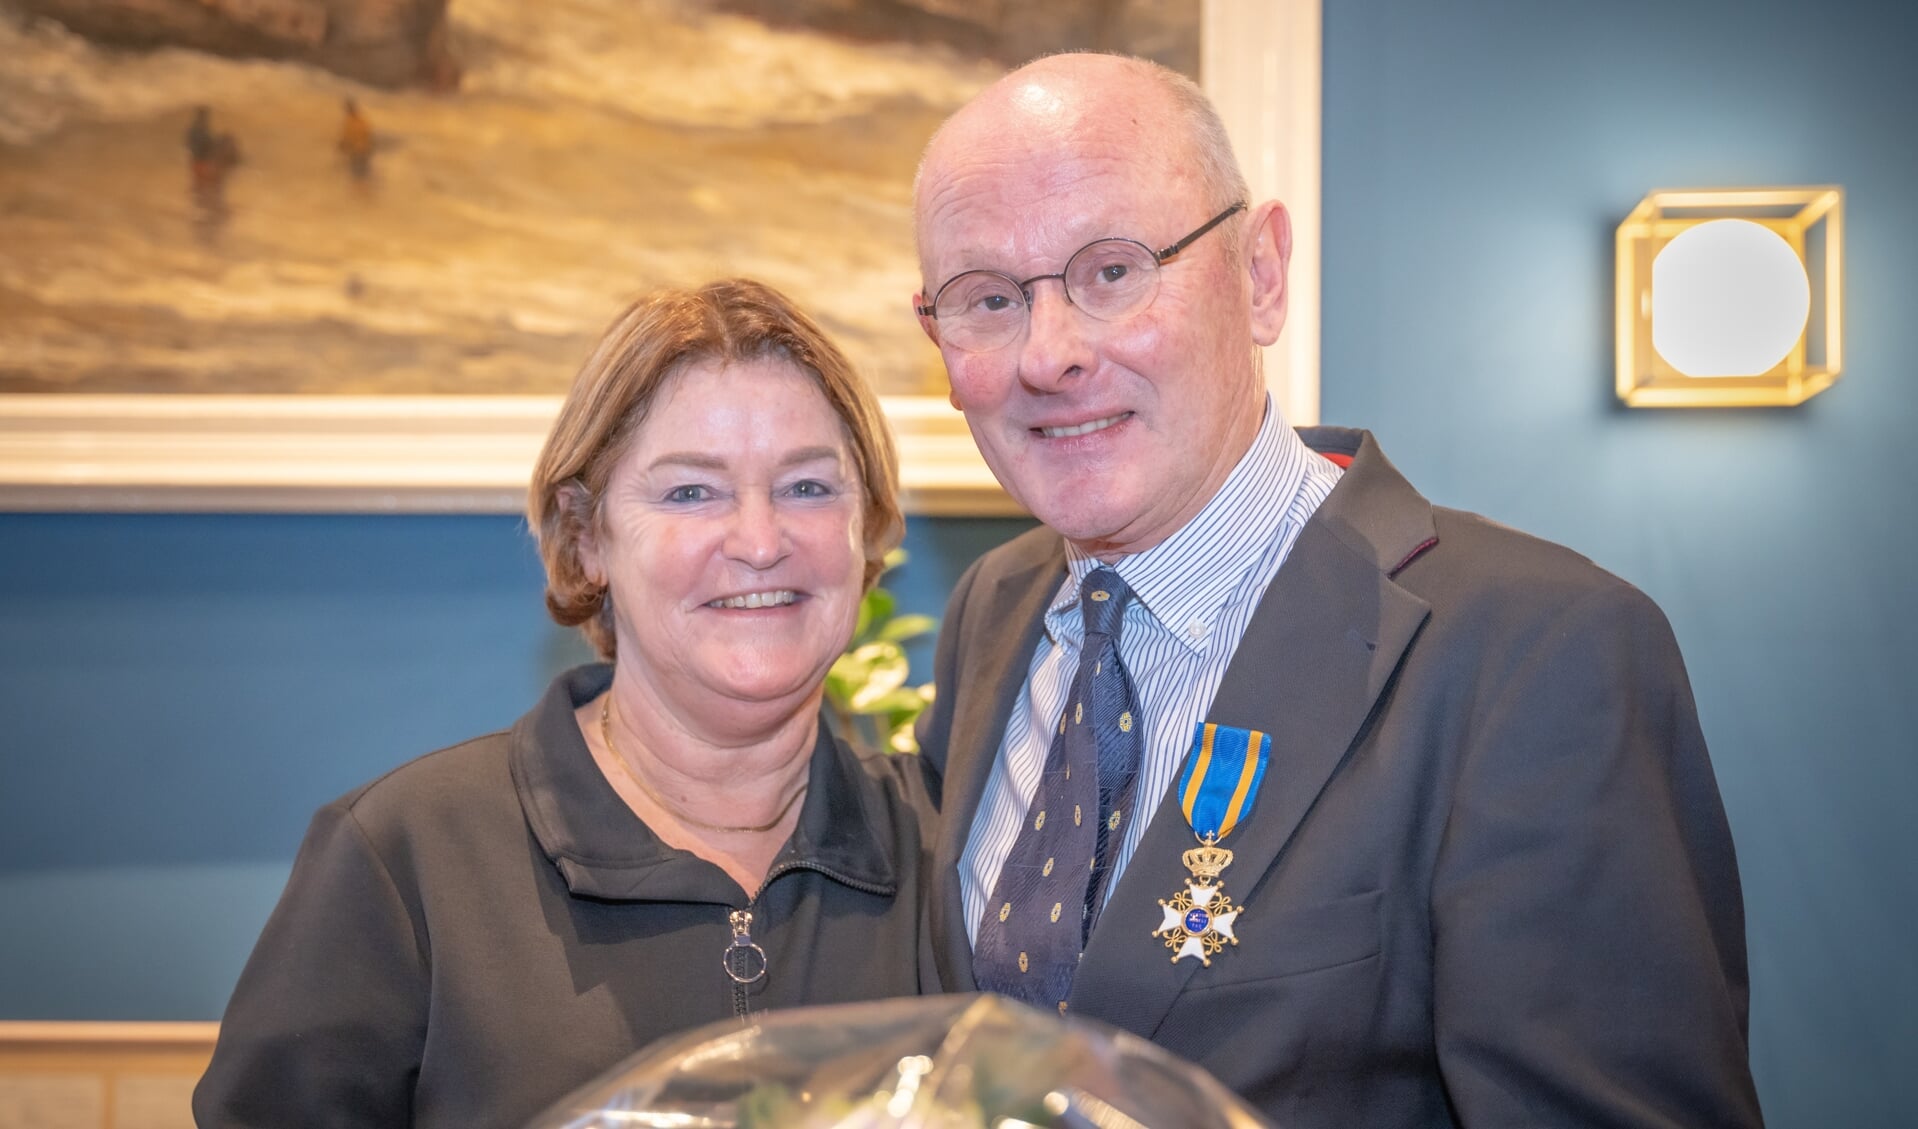  Robert André van Hulst met zijn vrouw is trots op zijn onderscheiding.